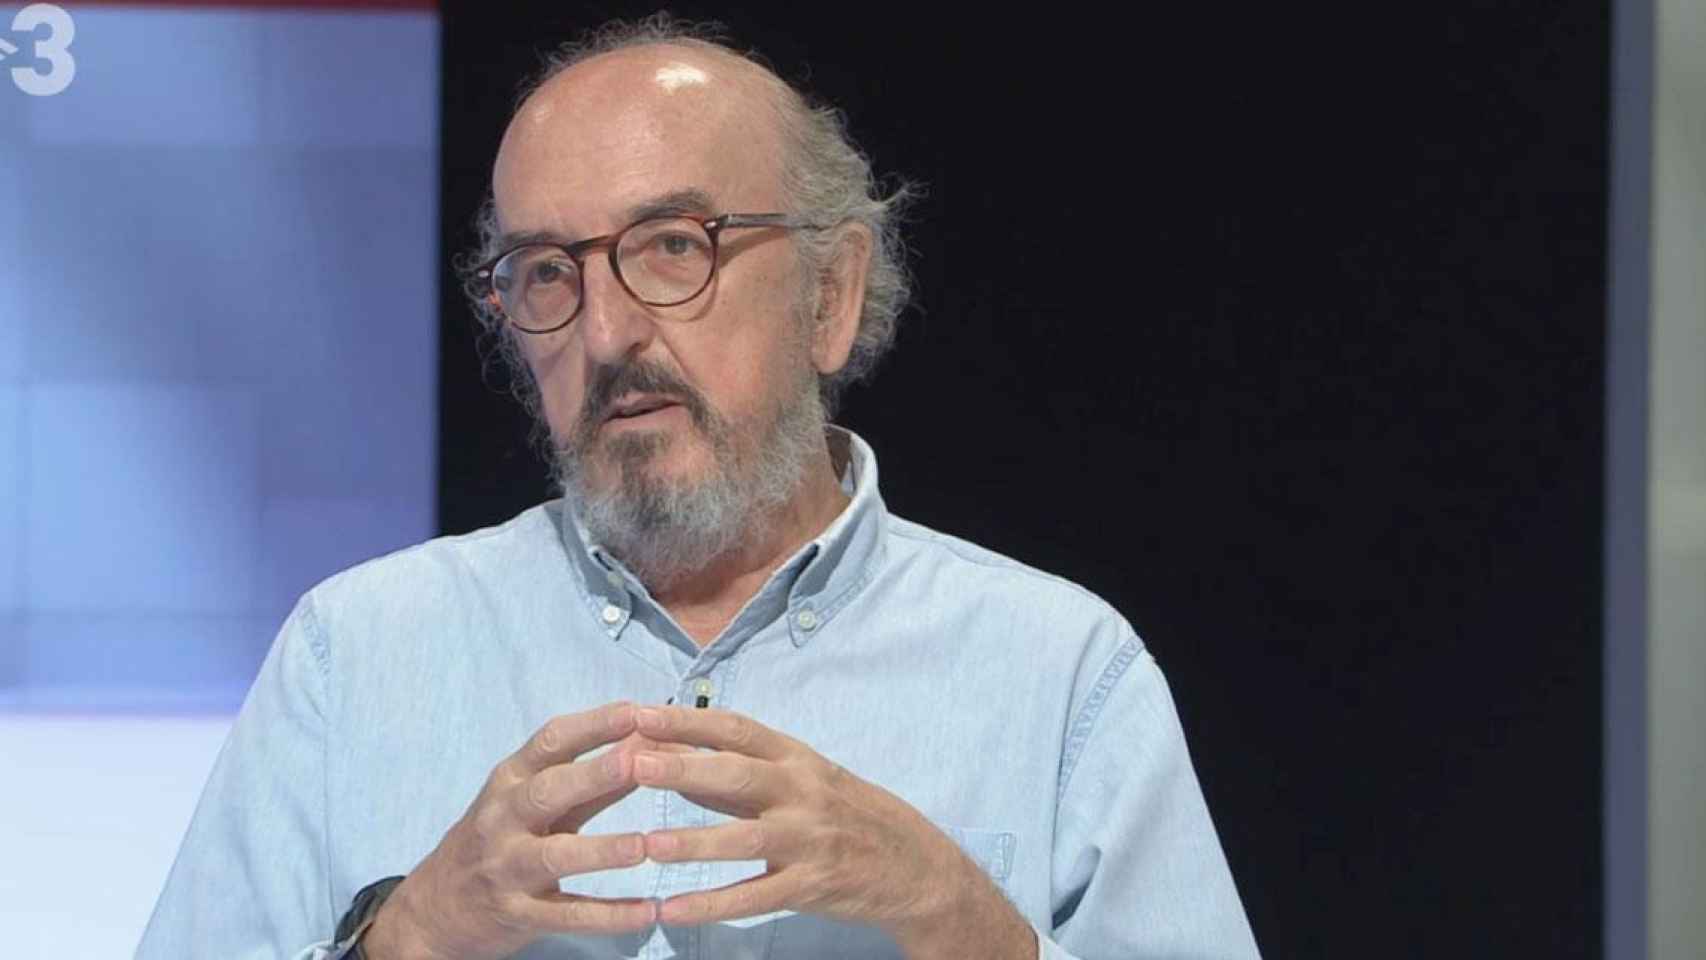 El presidente de Mediapro, Jaume Roures, durante una intervención en TV3 / TV3